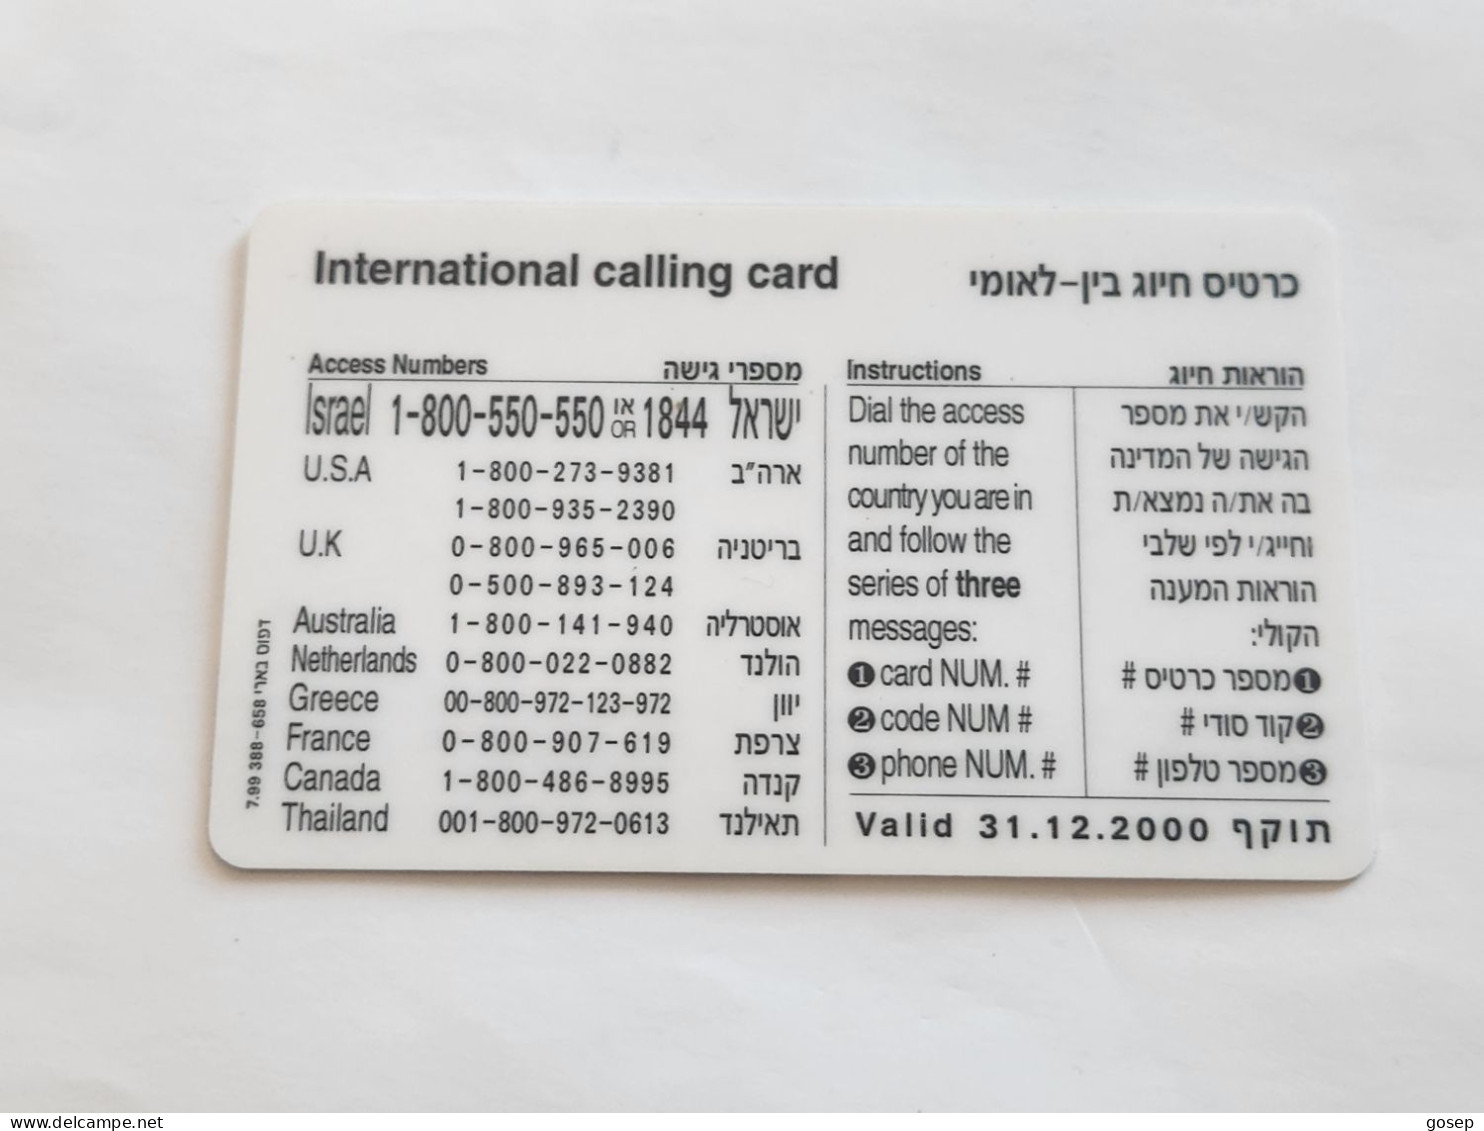 ISRAEL-(BEZ-INTER-744)LIMOR LIVNAT Communication Server-H-(56)(100uits)(16605701-3742)(plastic Card)Expansive Card - Israele